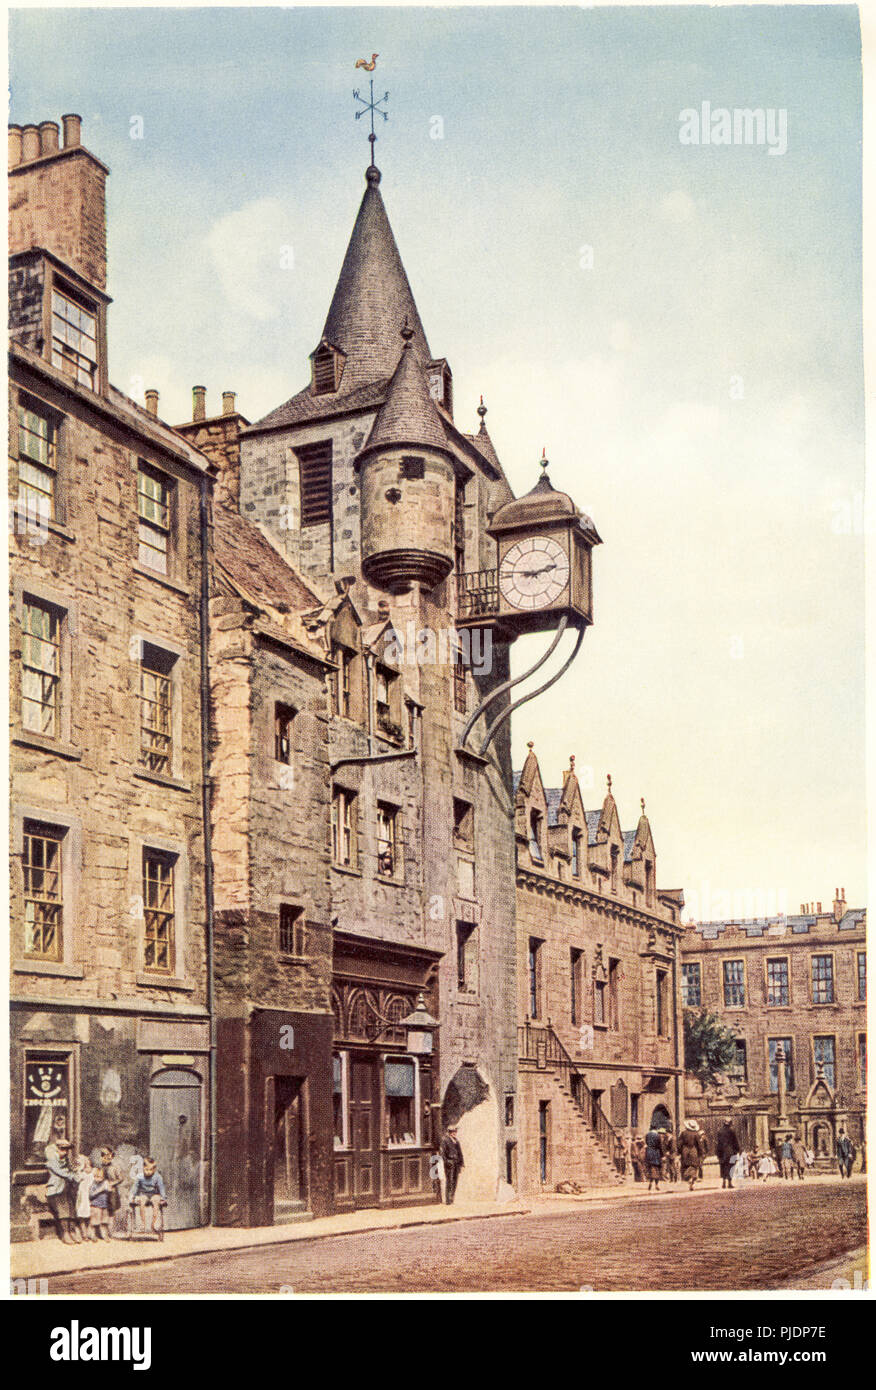 Eine farbige Illustration von Tolbooth, Canongate, Edinburgh UK, gescannt mit hoher Auflösung aus einem Buch, das 1929 gedruckt wurde. Glaubte, dass es keine Urheberrechte gibt Stockfoto